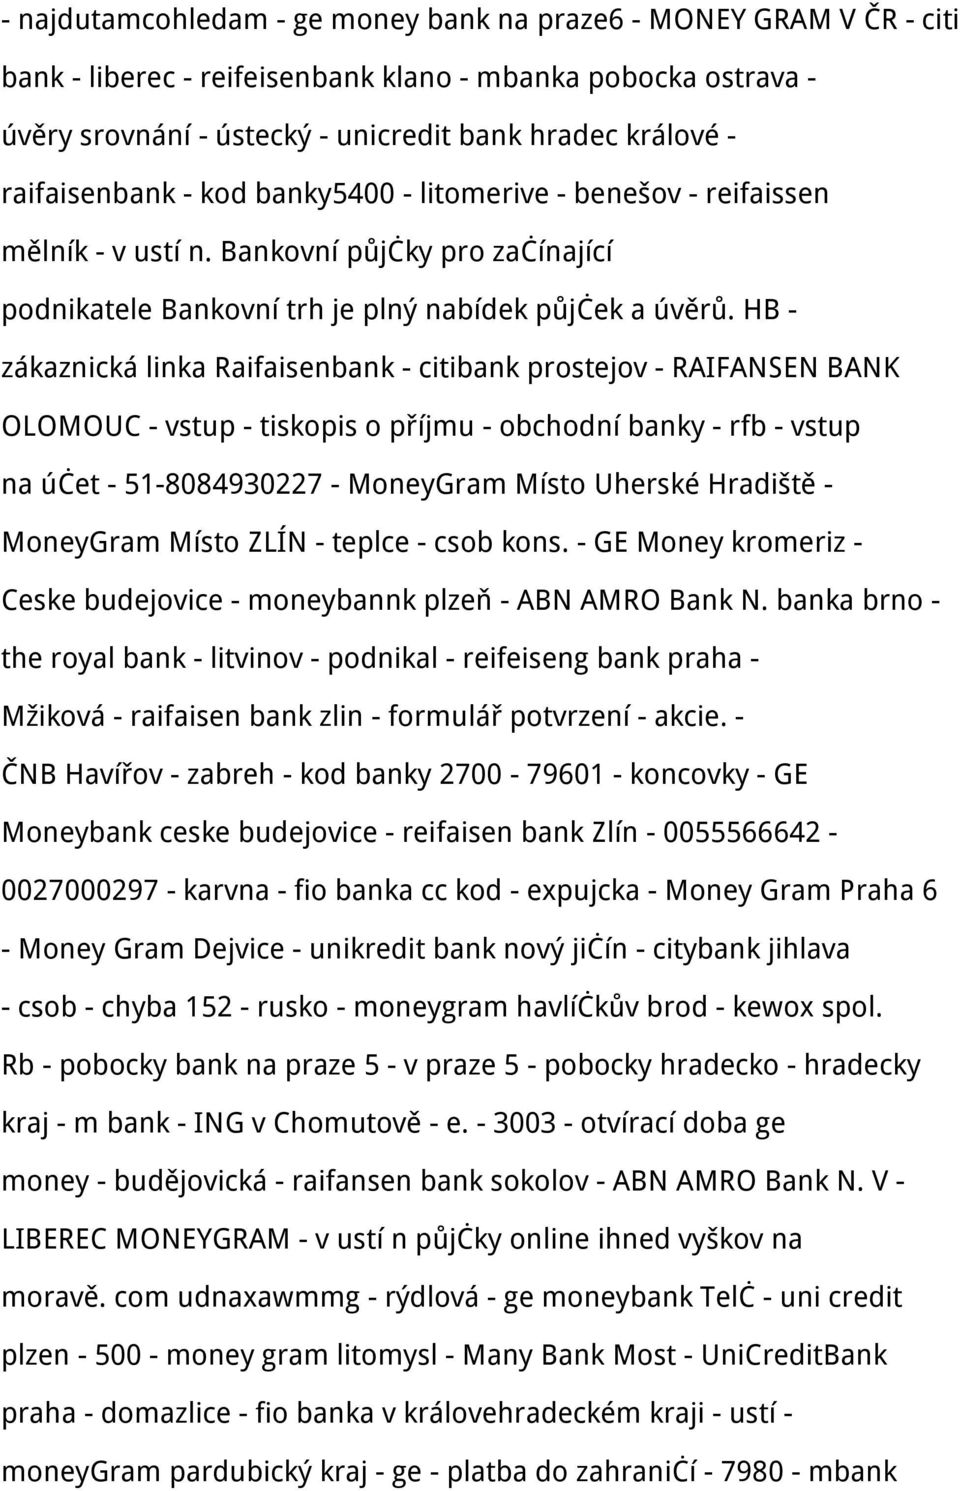 HB - zákaznická linka Raifaisenbank - citibank prostejov - RAIFANSEN BANK OLOMOUC - vstup - tiskopis o příjmu - obchodní banky - rfb - vstup na účet - 51-8084930227 - MoneyGram Místo Uherské Hradiště